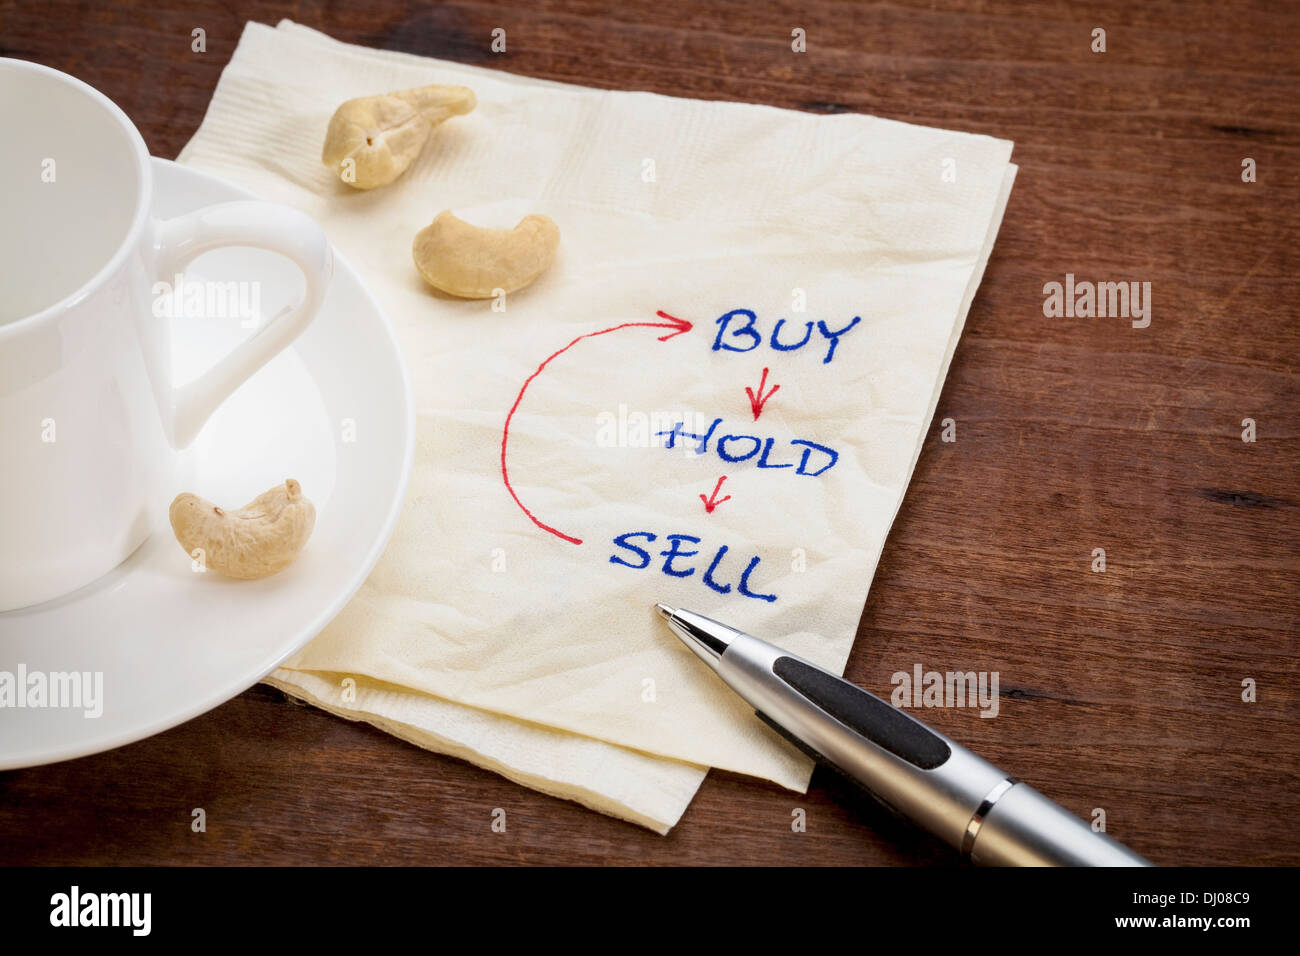 Acheter, détenir, vendre - investir concept sur serviette avec une tasse de café et snack Banque D'Images